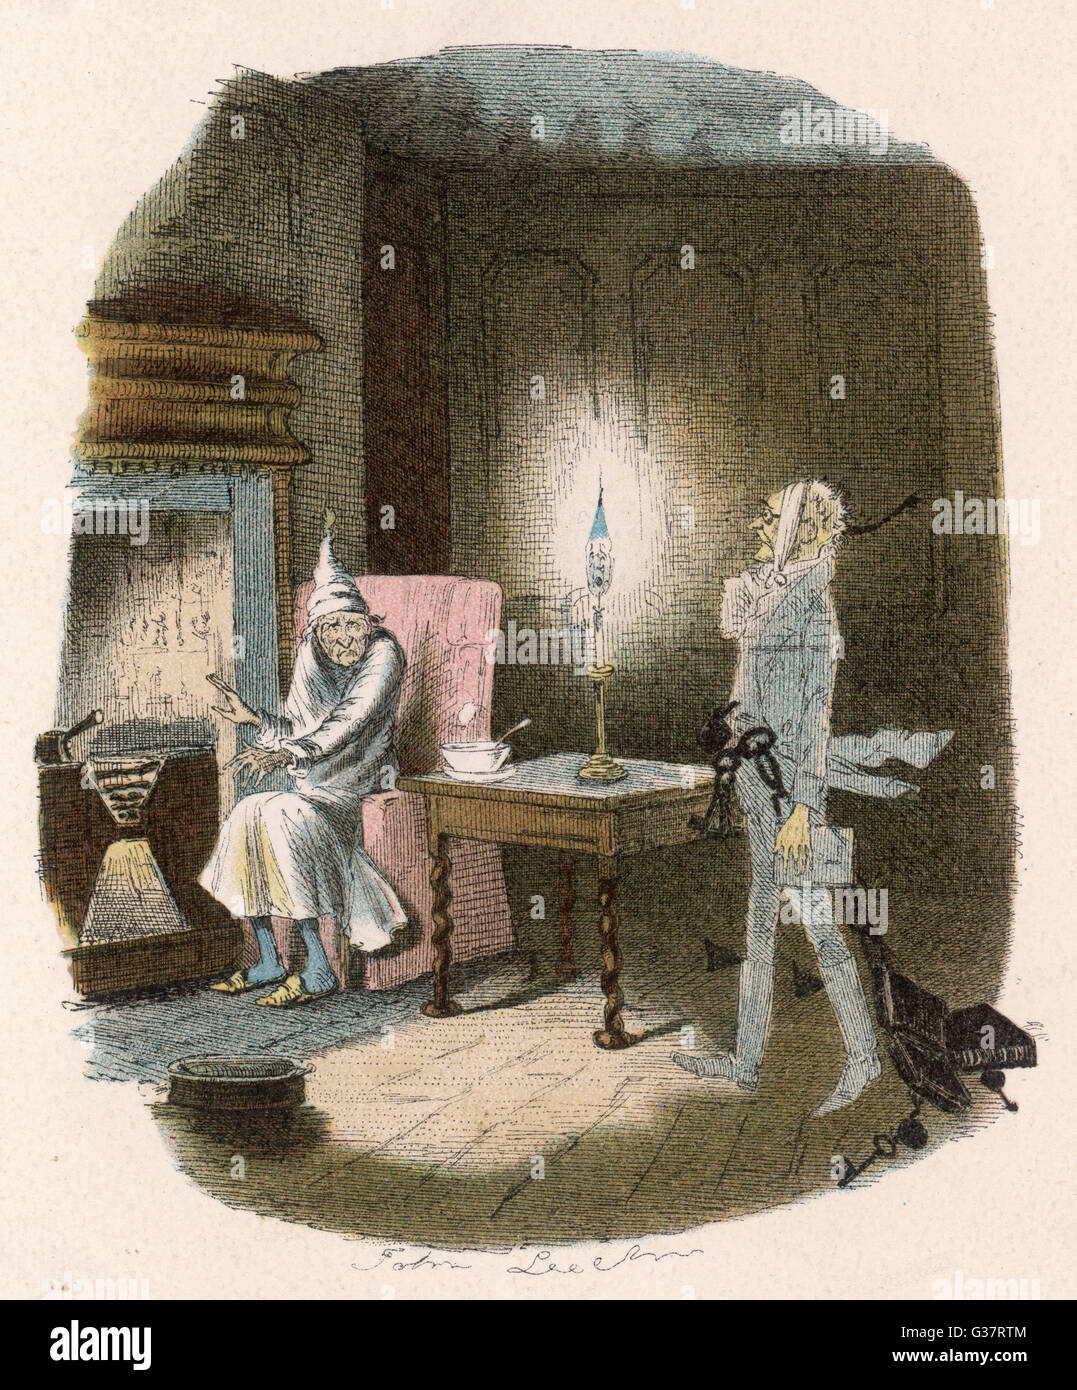 Scrooge reçoit la visite du fantôme de Jacob Marley, son ancien partenaire d'affaires. Date : Première publication : 1843-44 Banque D'Images